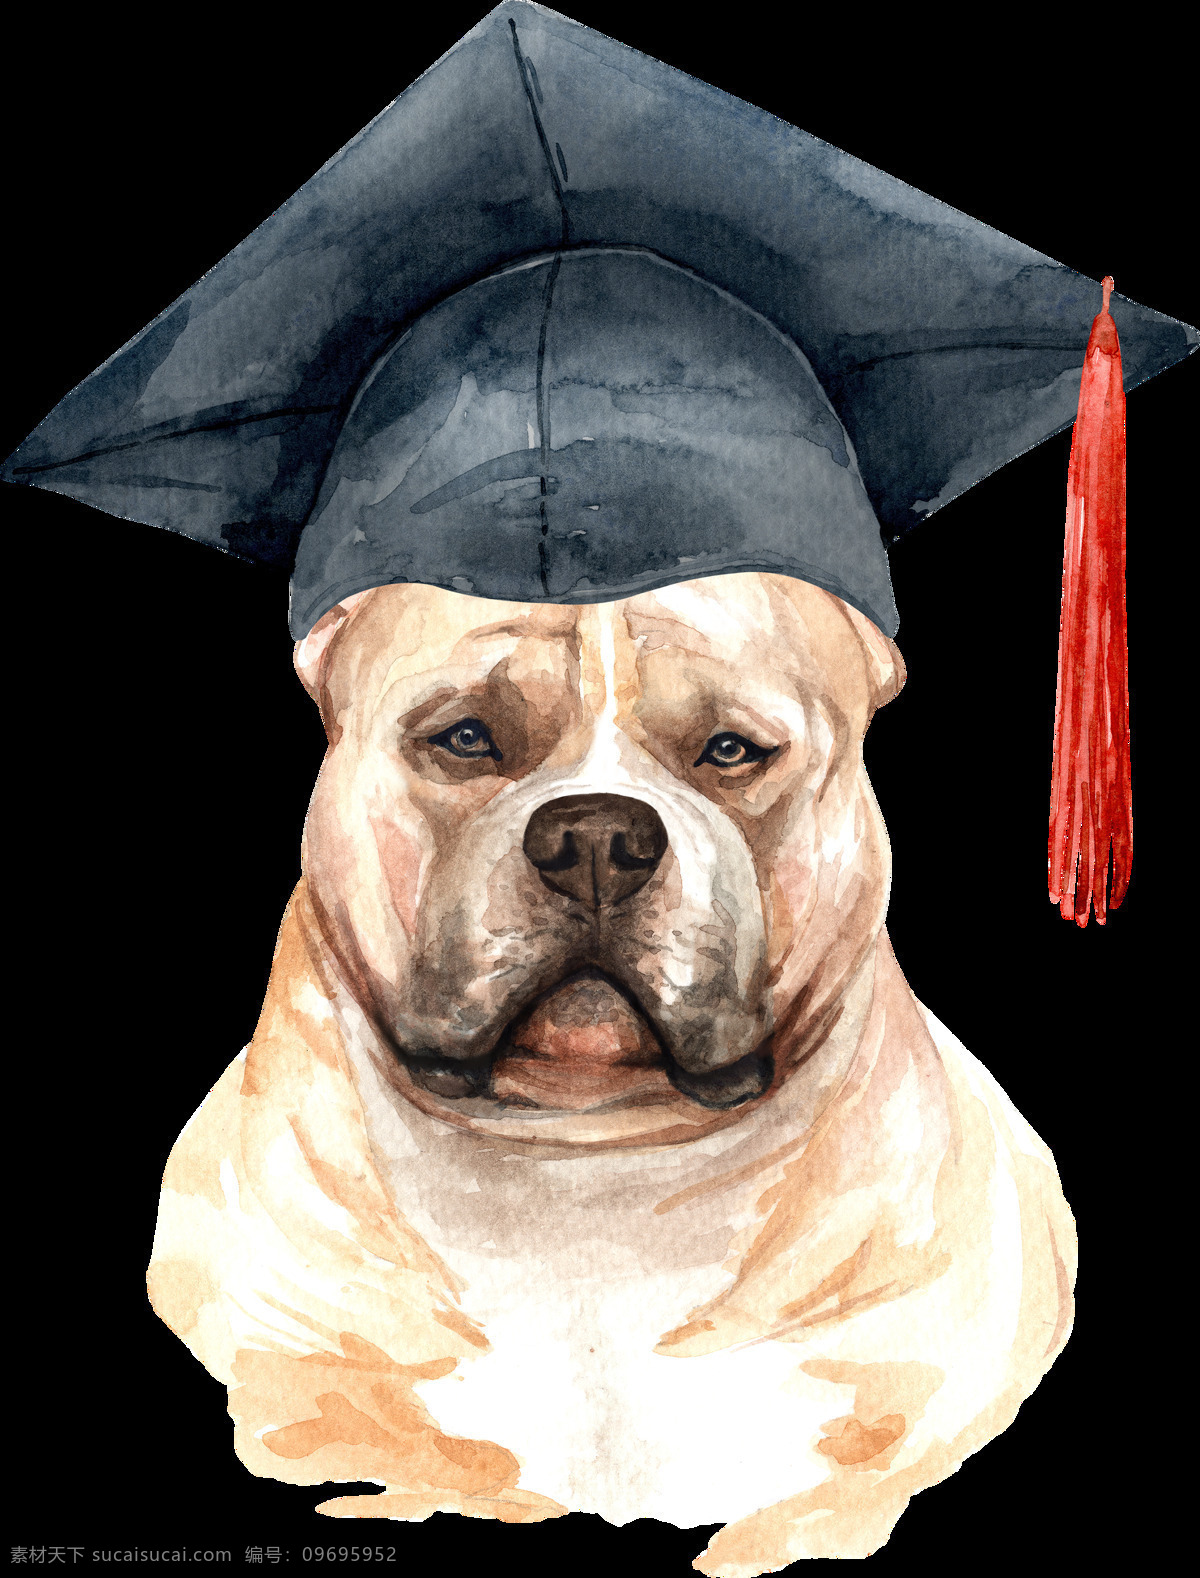 水彩 绘画 可爱 小狗 水彩绘画 涂鸦 呆萌可爱 小动物 狗 犬 创意绘画 图案设计 表情 外国犬头像 博士帽 帽子